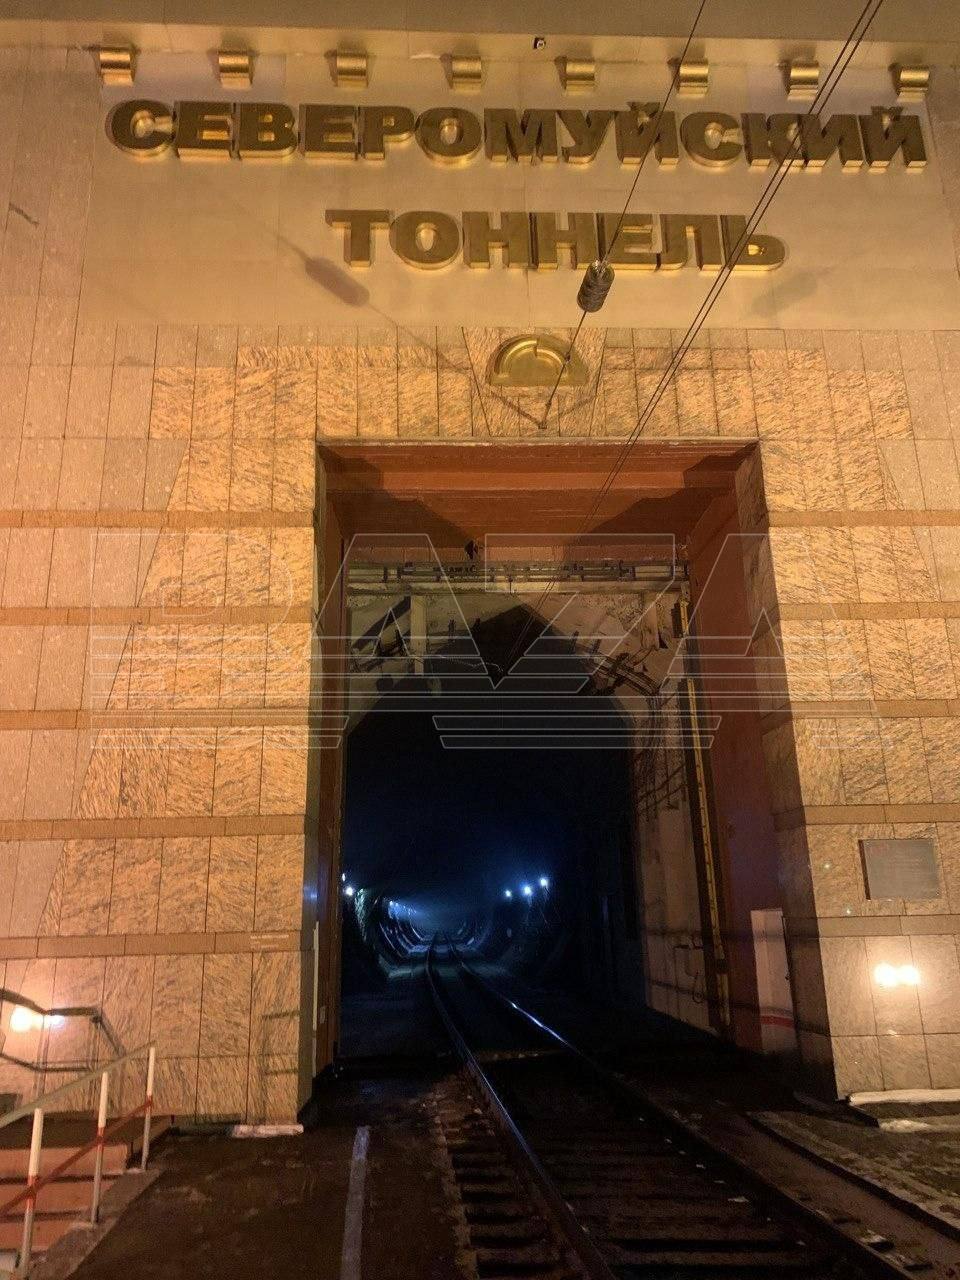 Россияне показали фото Северомуйского тоннеля, который подорвала СБУ. Выдумали "замыкание"